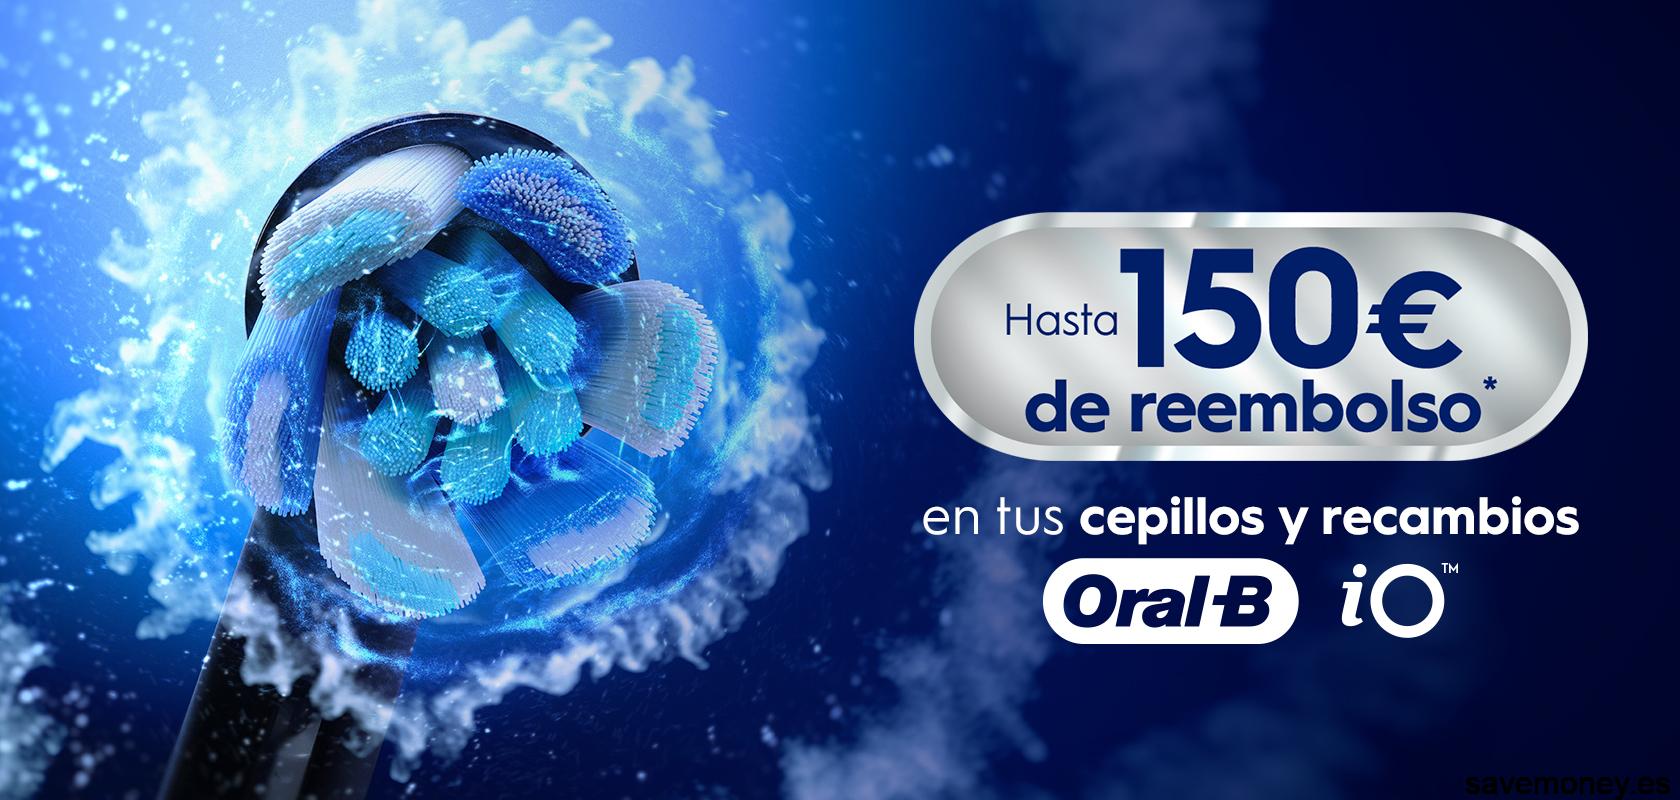 Descubre la Promoción Oral-B iO: Hasta 150€ de Reembolso + 30% de Descuento